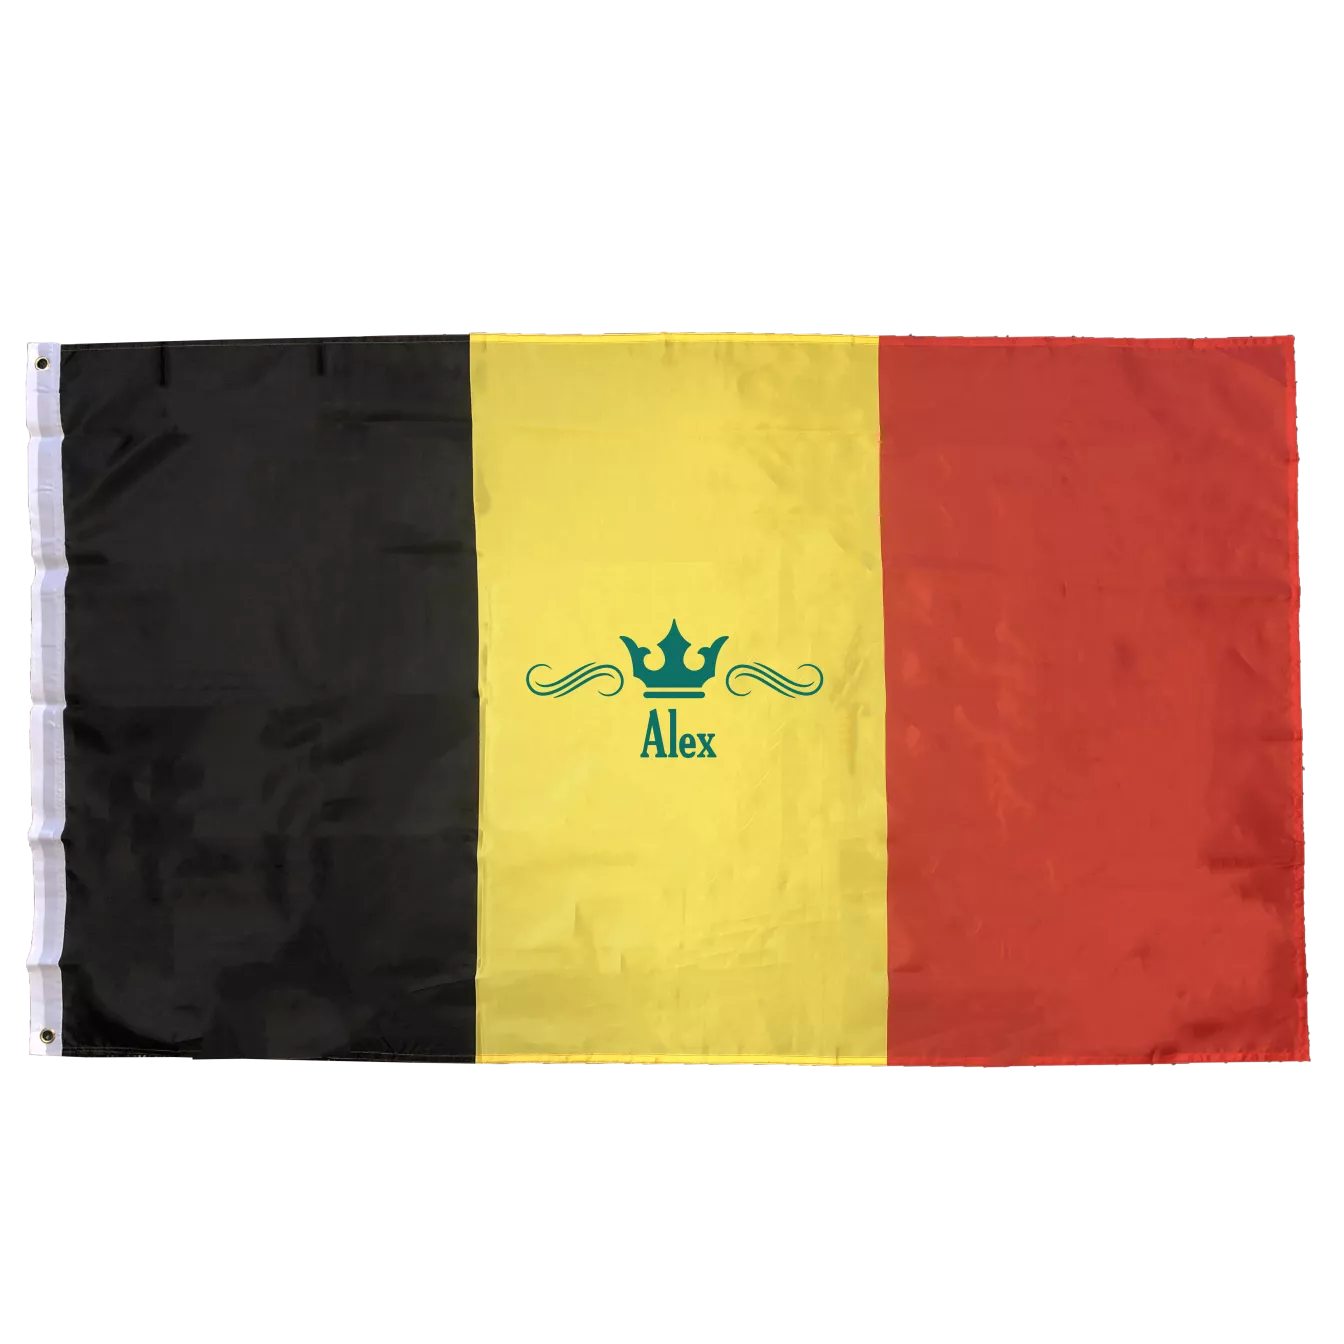 Belgium flag, Belgium flag, Belgium flag, 150 x 90 cm, Belgium flag